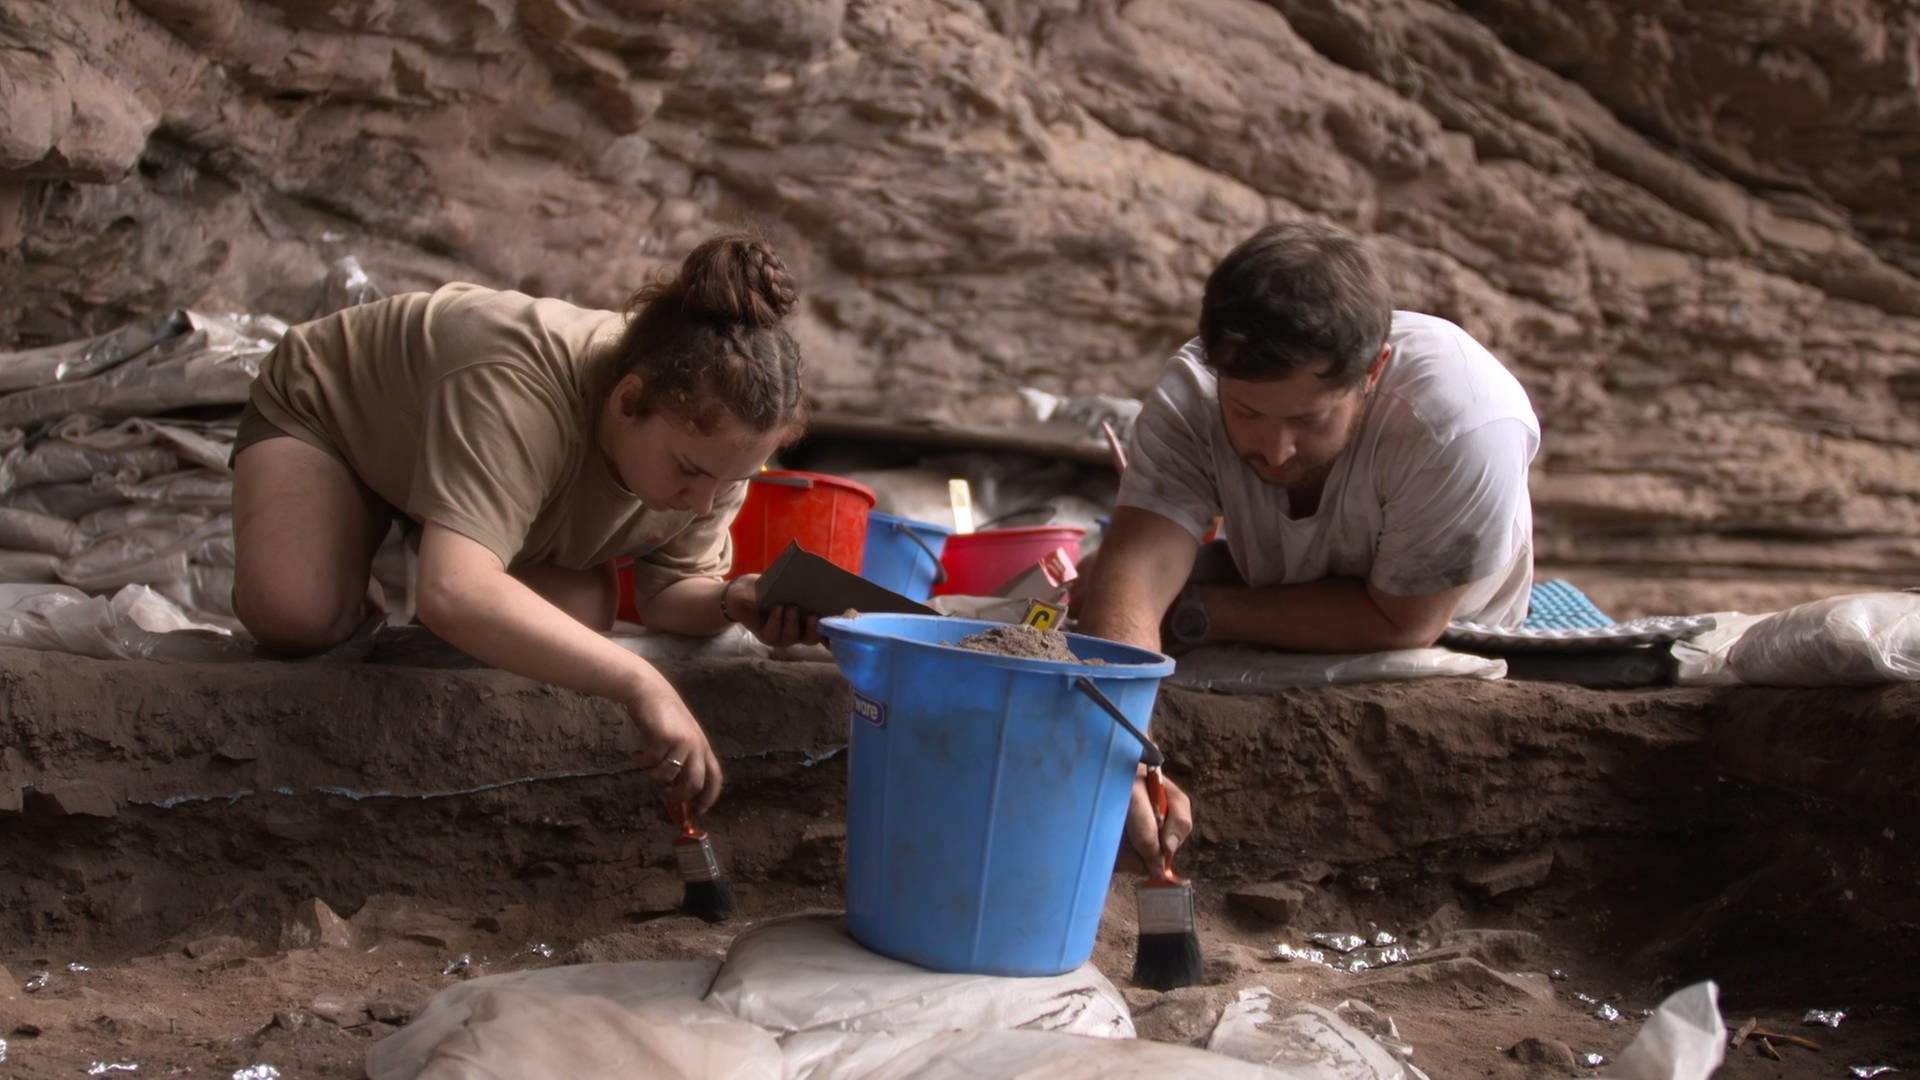 Forscherin (links) und Forscher (rechts) knien an einer Ausgrabungsstätte und legen mit Pinseln vorsichtig Funde frei. (Foto: SWR)